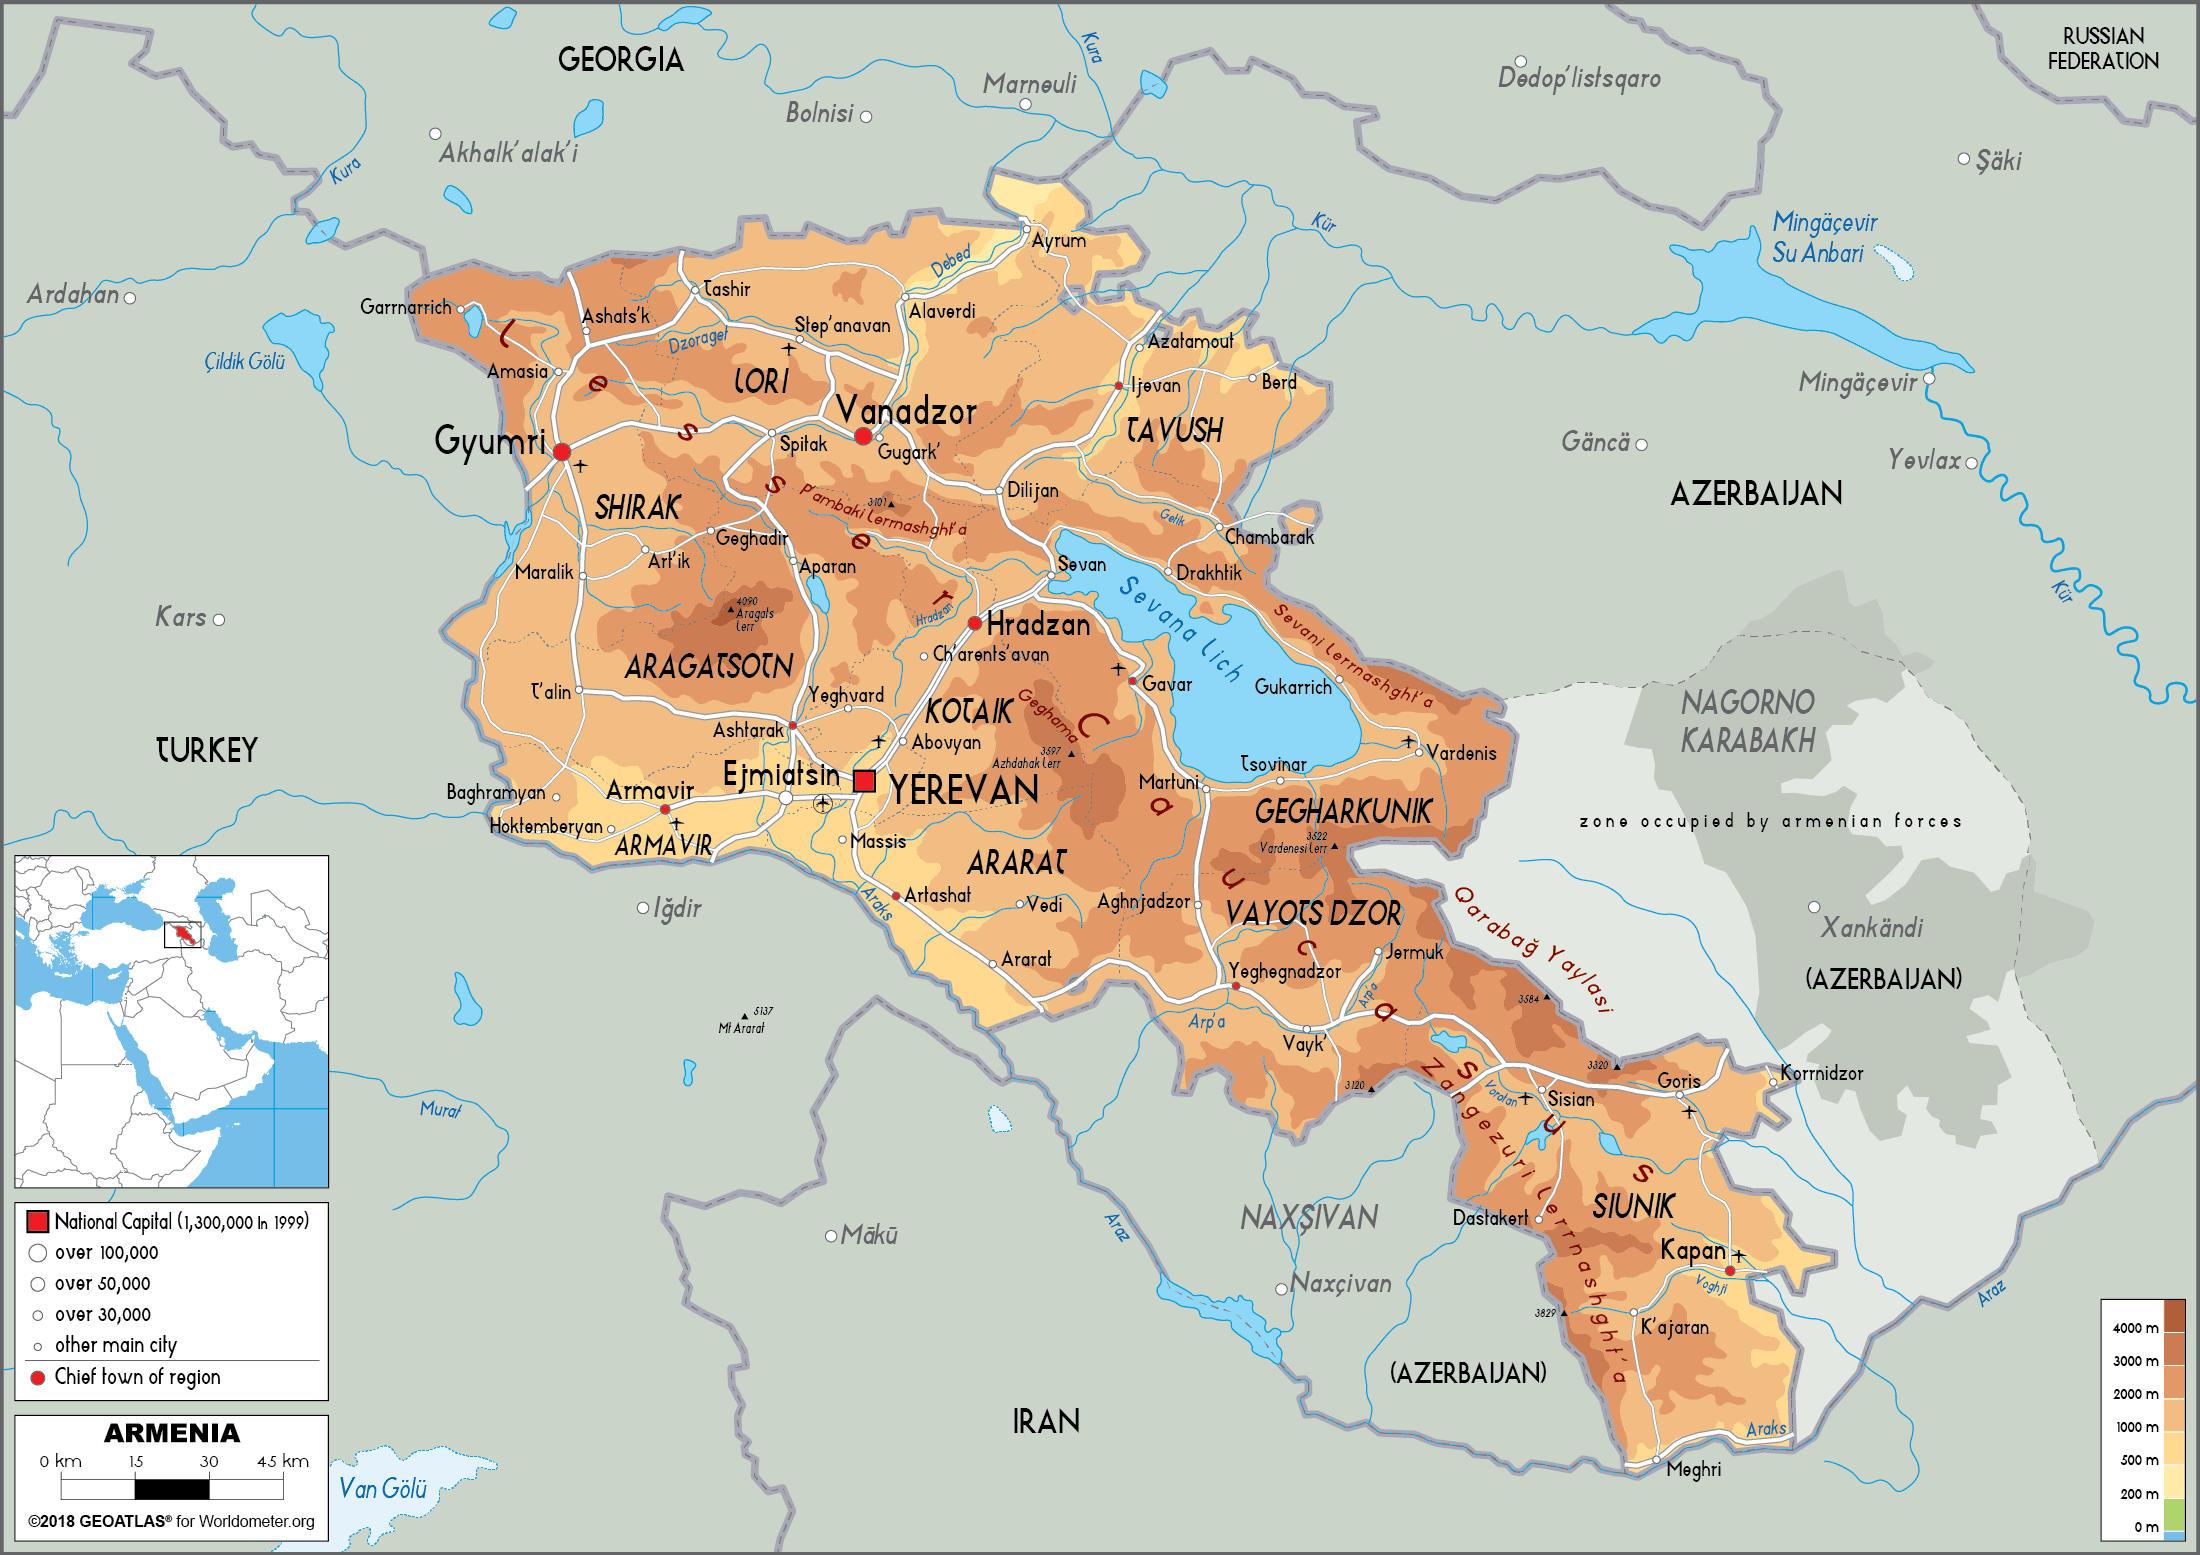 Armenia Map / Armenia, Azerbaijan and the Middle East - CGTN : Armenia ...